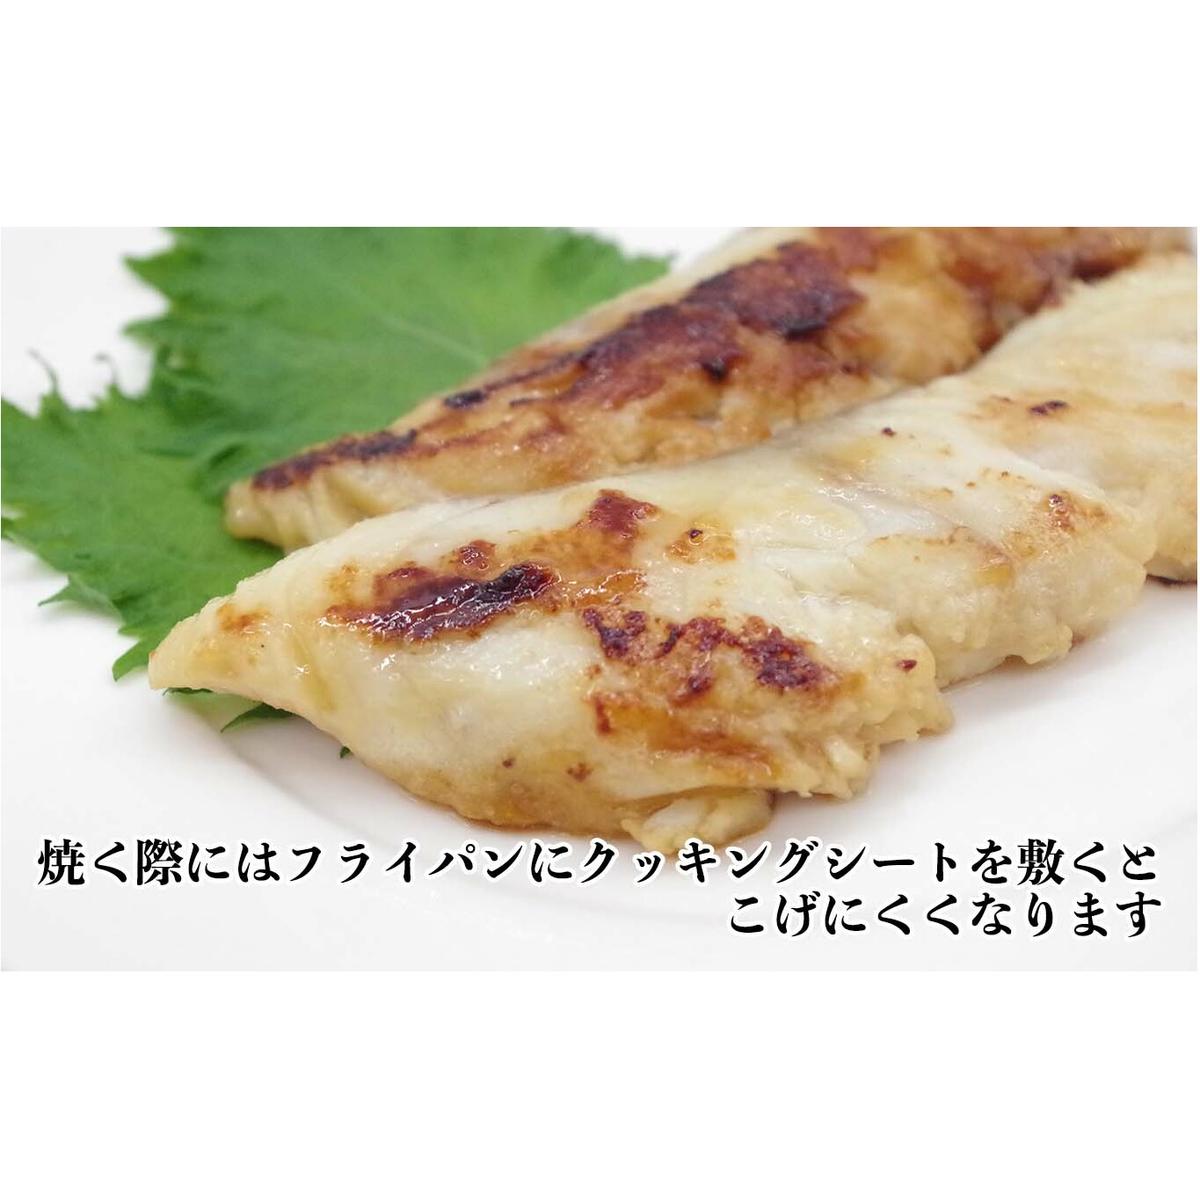 北海道産 たら 3種 セット タラ 鱈 西京焼き フライ 珍味 魚 白身魚 北海道 新ひだか町 _イメージ3